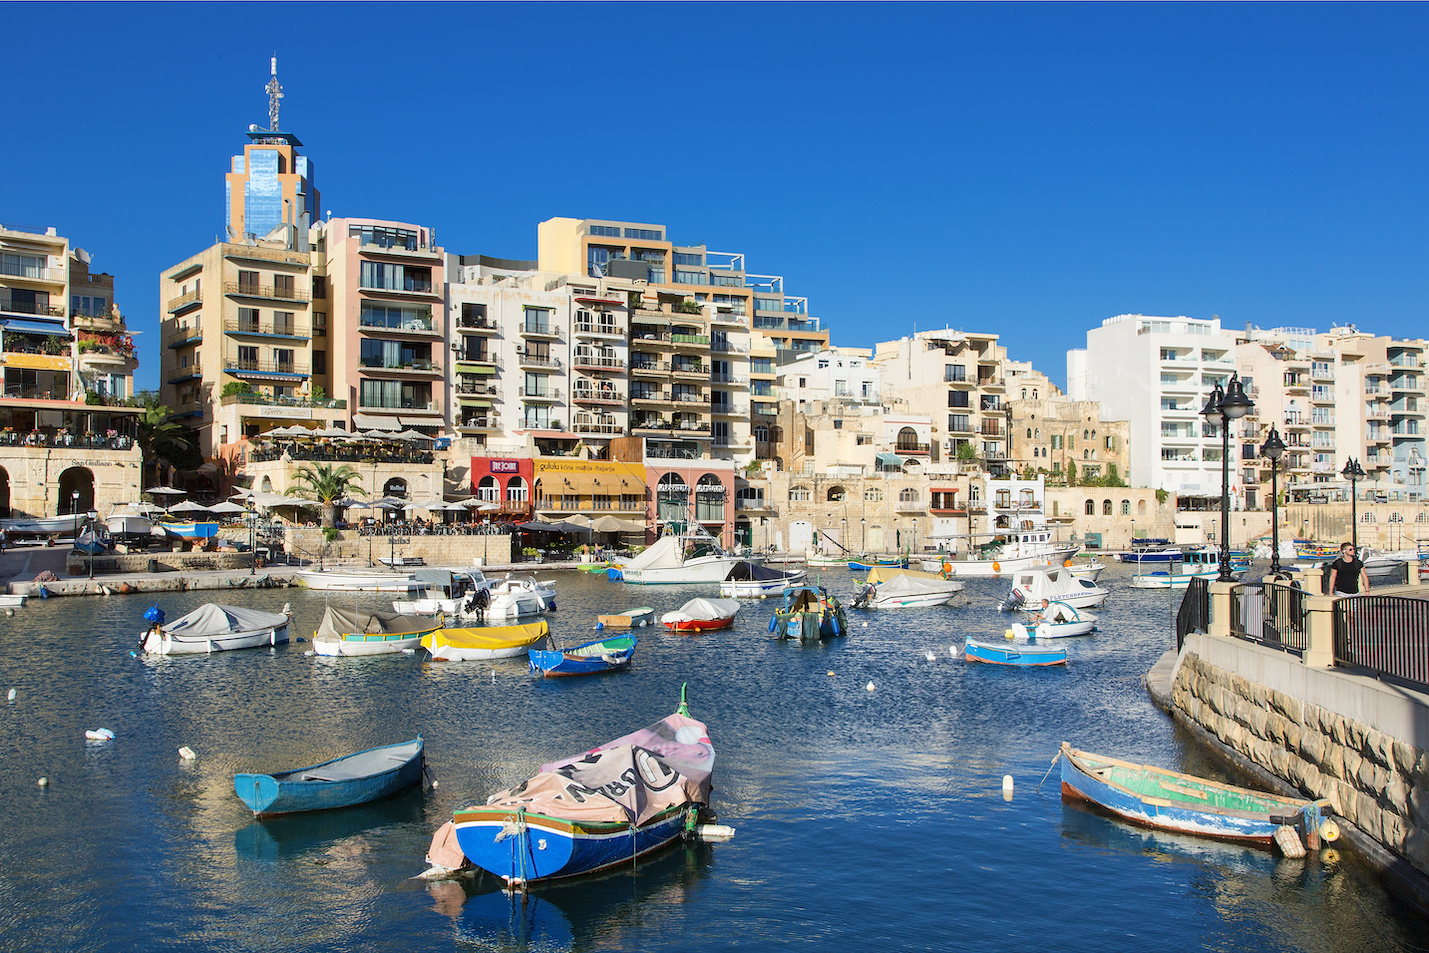 紀元前5000年頃からの歴史を持つという街とヨーロッパでも人気のリゾートと２つの顔を持つマルタ。